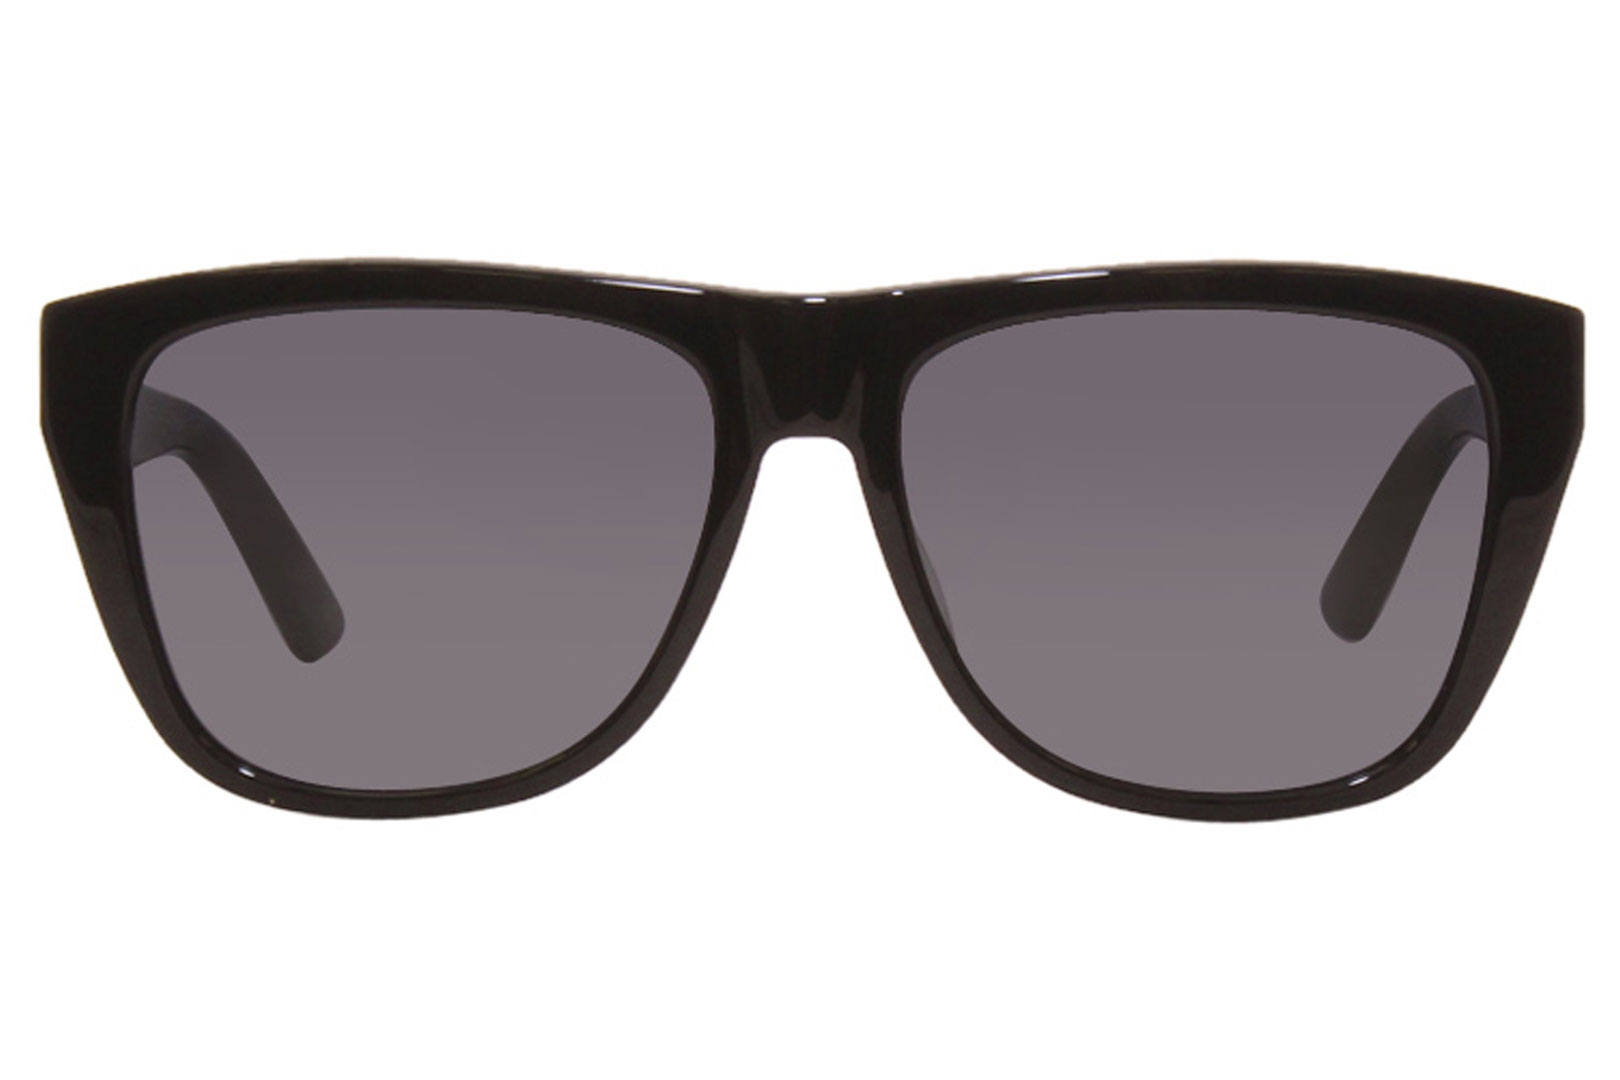 Gucci Sunglasses Men's GG0926S 001 Black-Green/Grey 57-16-145mm ...